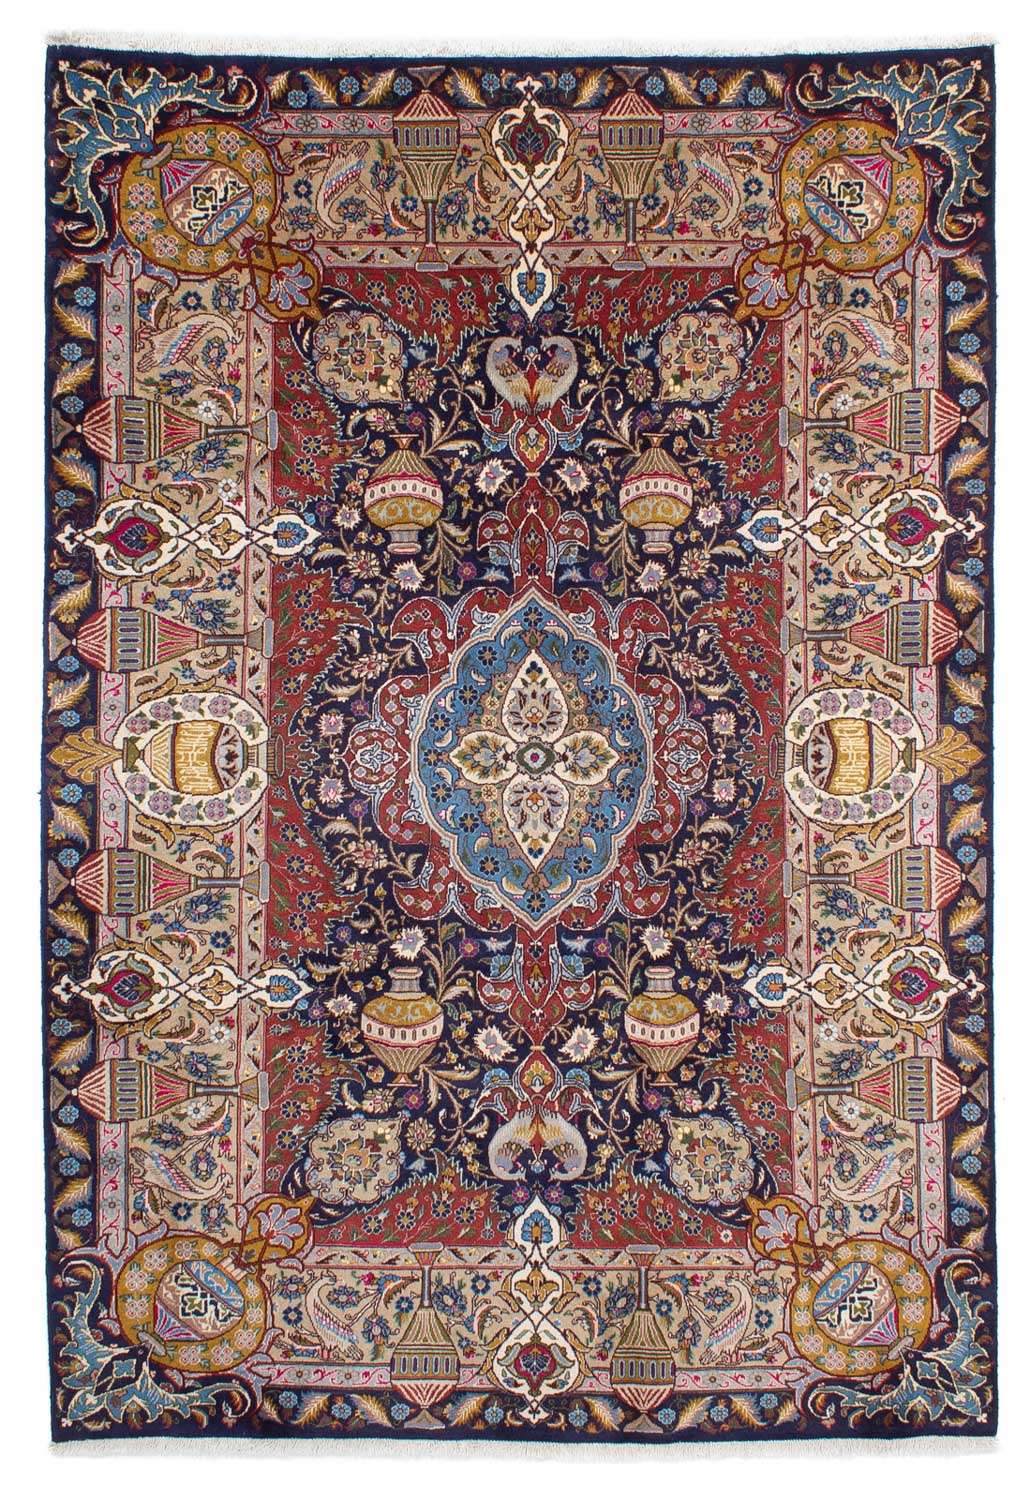 Tapis persan - Classique - 288 x 203 cm - bleu foncé